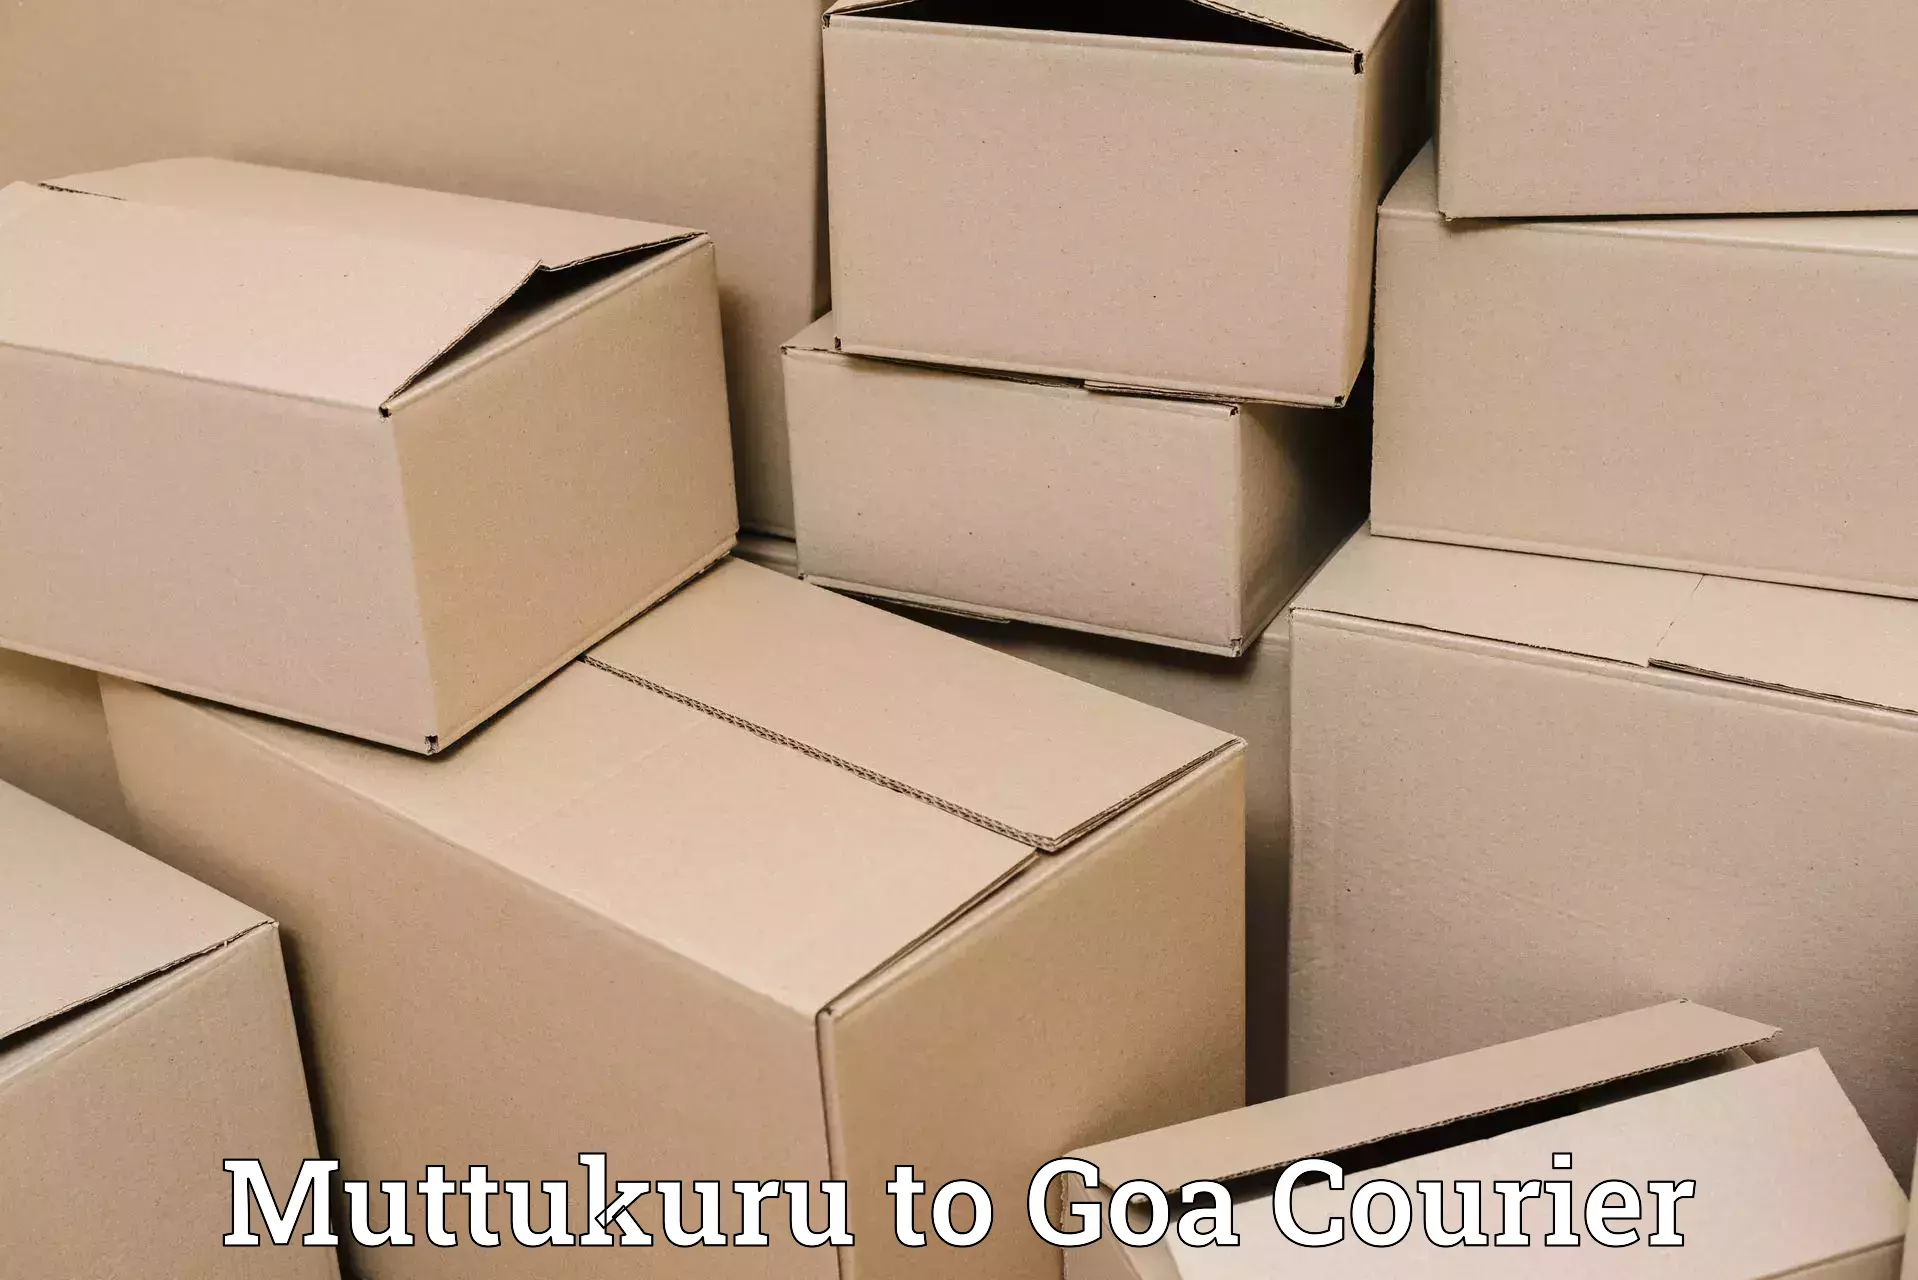 Overnight delivery Muttukuru to Panaji